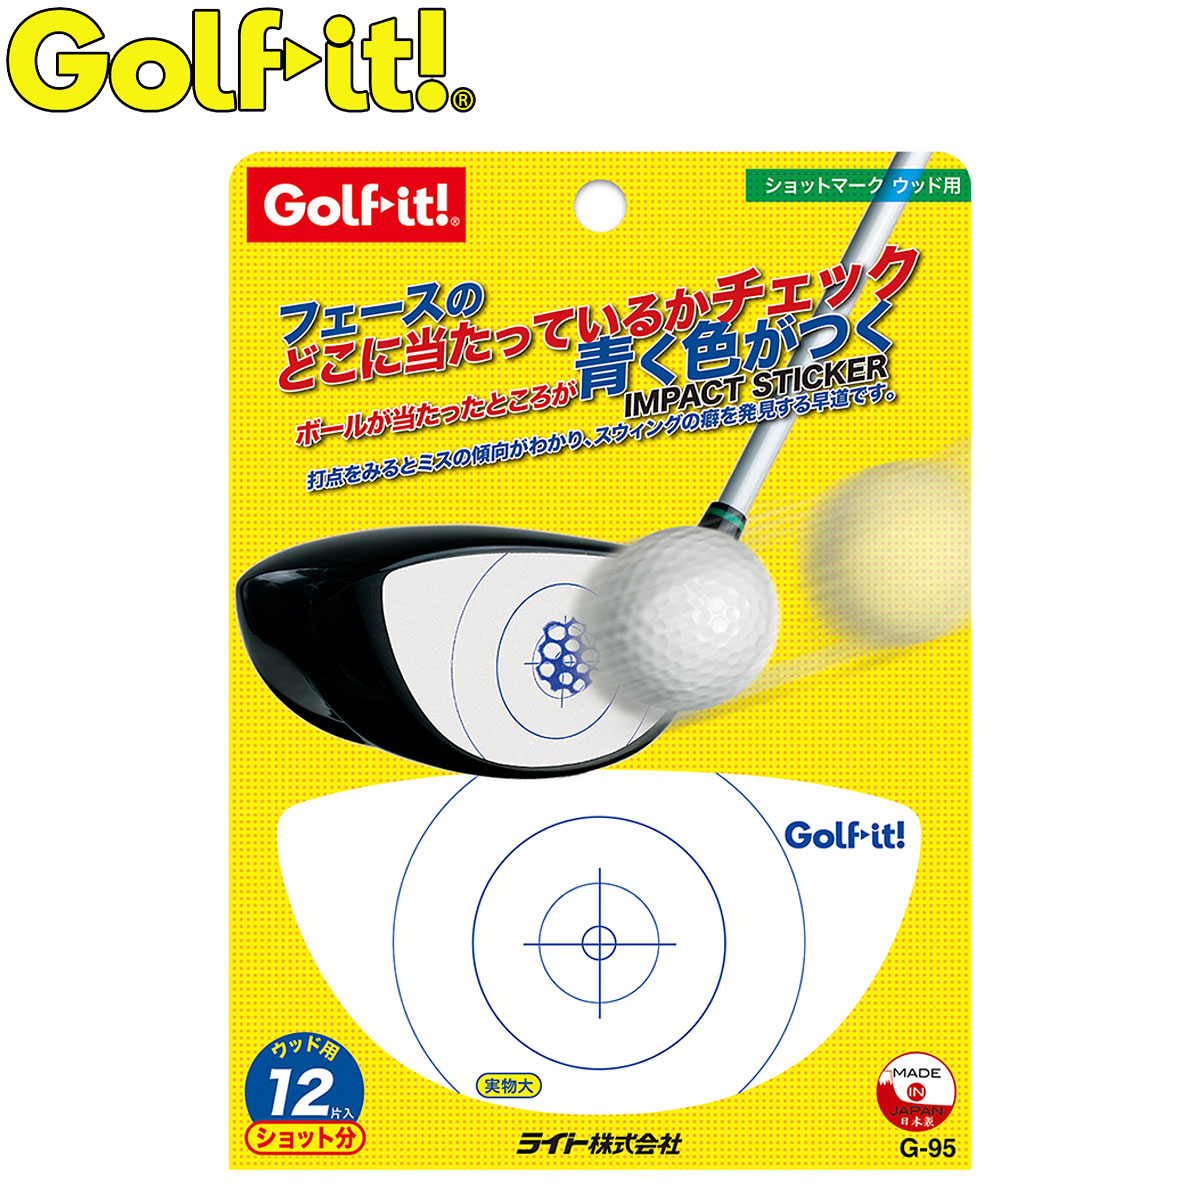 打点が発色するショット診断用ラベル Golfit ゴルフイット LiTE ライト ショットマーク 日本正規品 G-95 毎日激安特売で 営業中です ゴルフスイング練習用品 ウッド用 早割クーポン